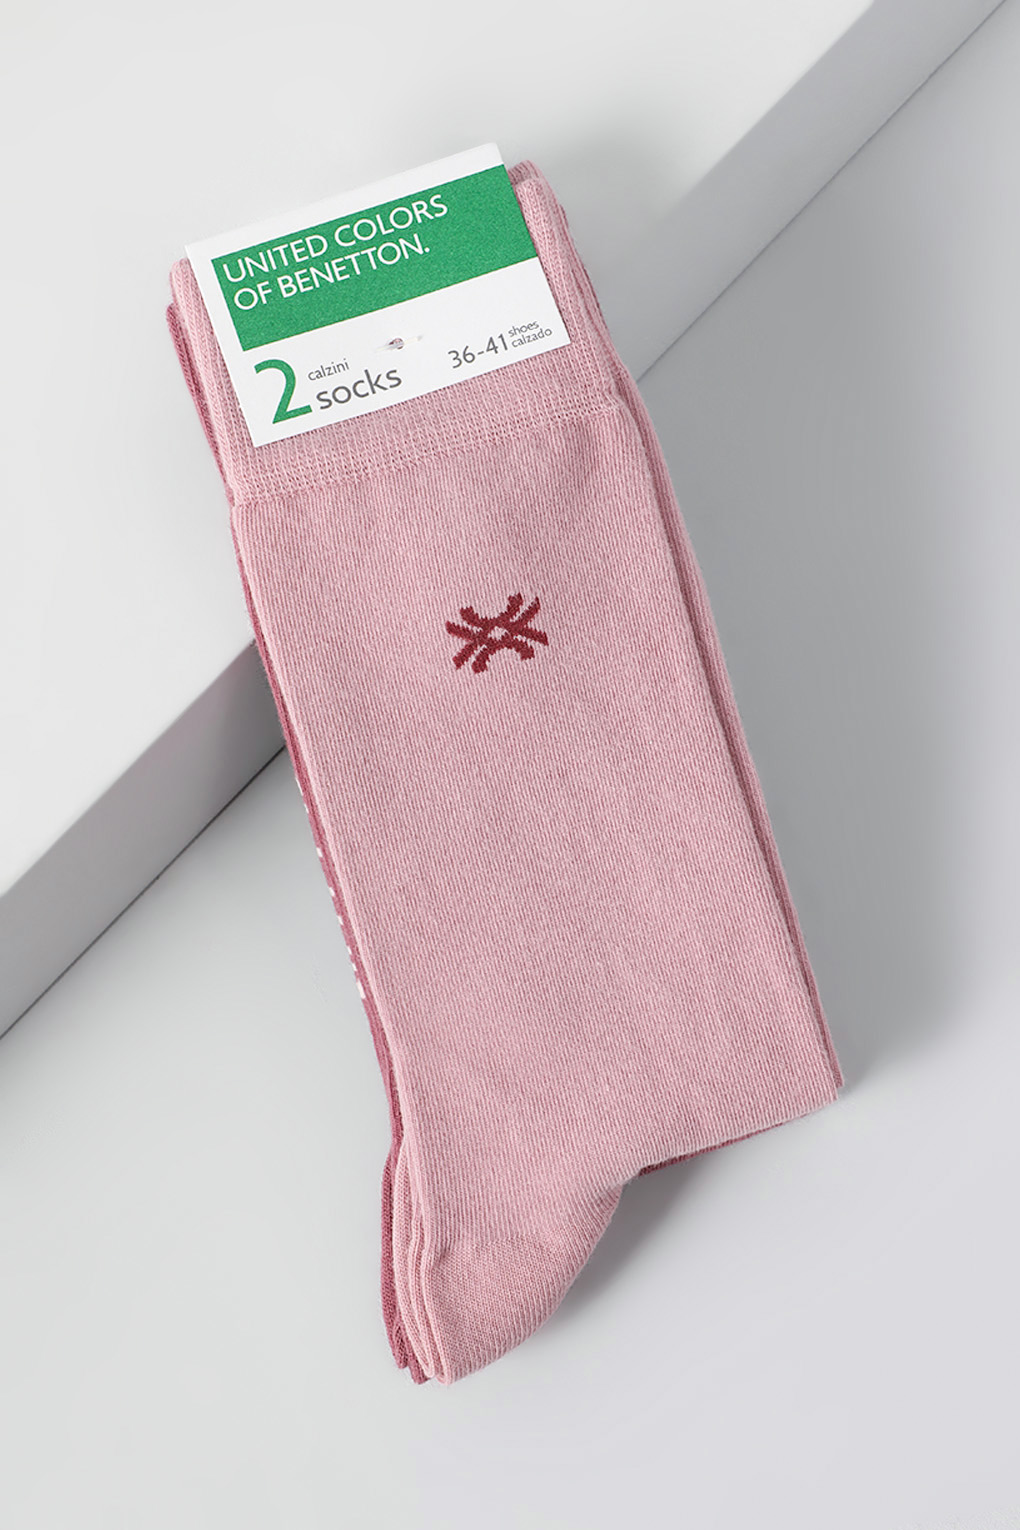 Комплект носков женских Benetton Undercolors 6AO32701S розовых 36-38